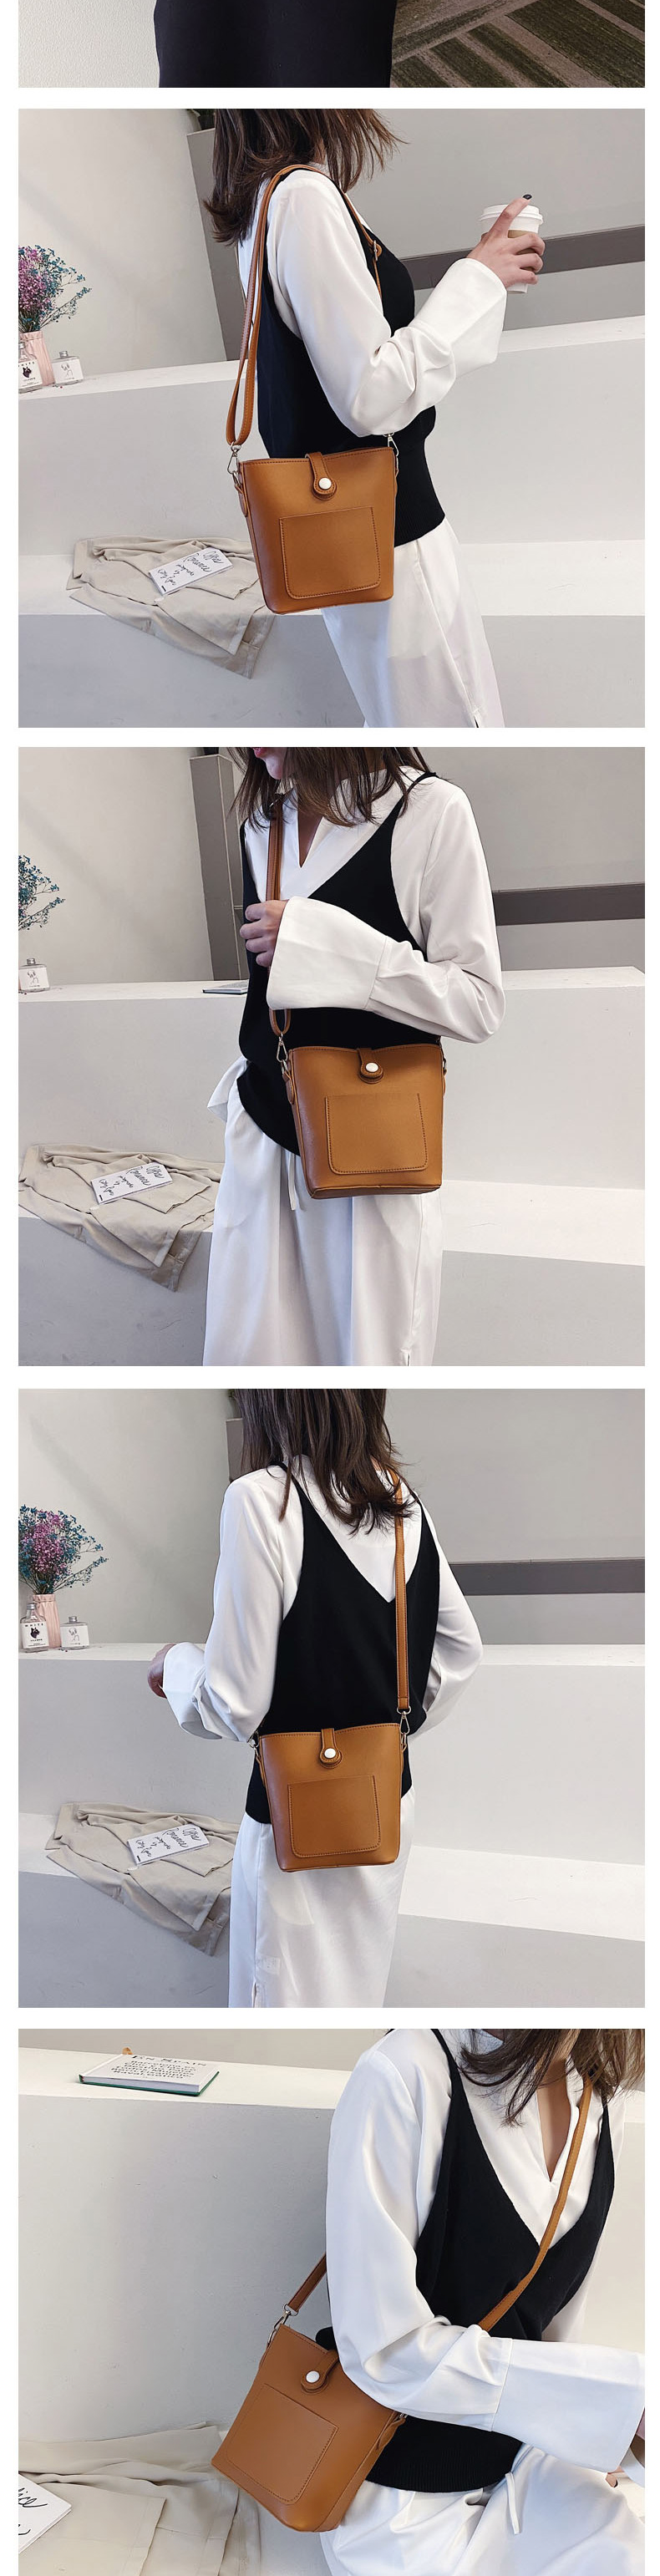 Fashion Light Brown Soft Leather Shoulder Crossbody Bag,Shoulder bags